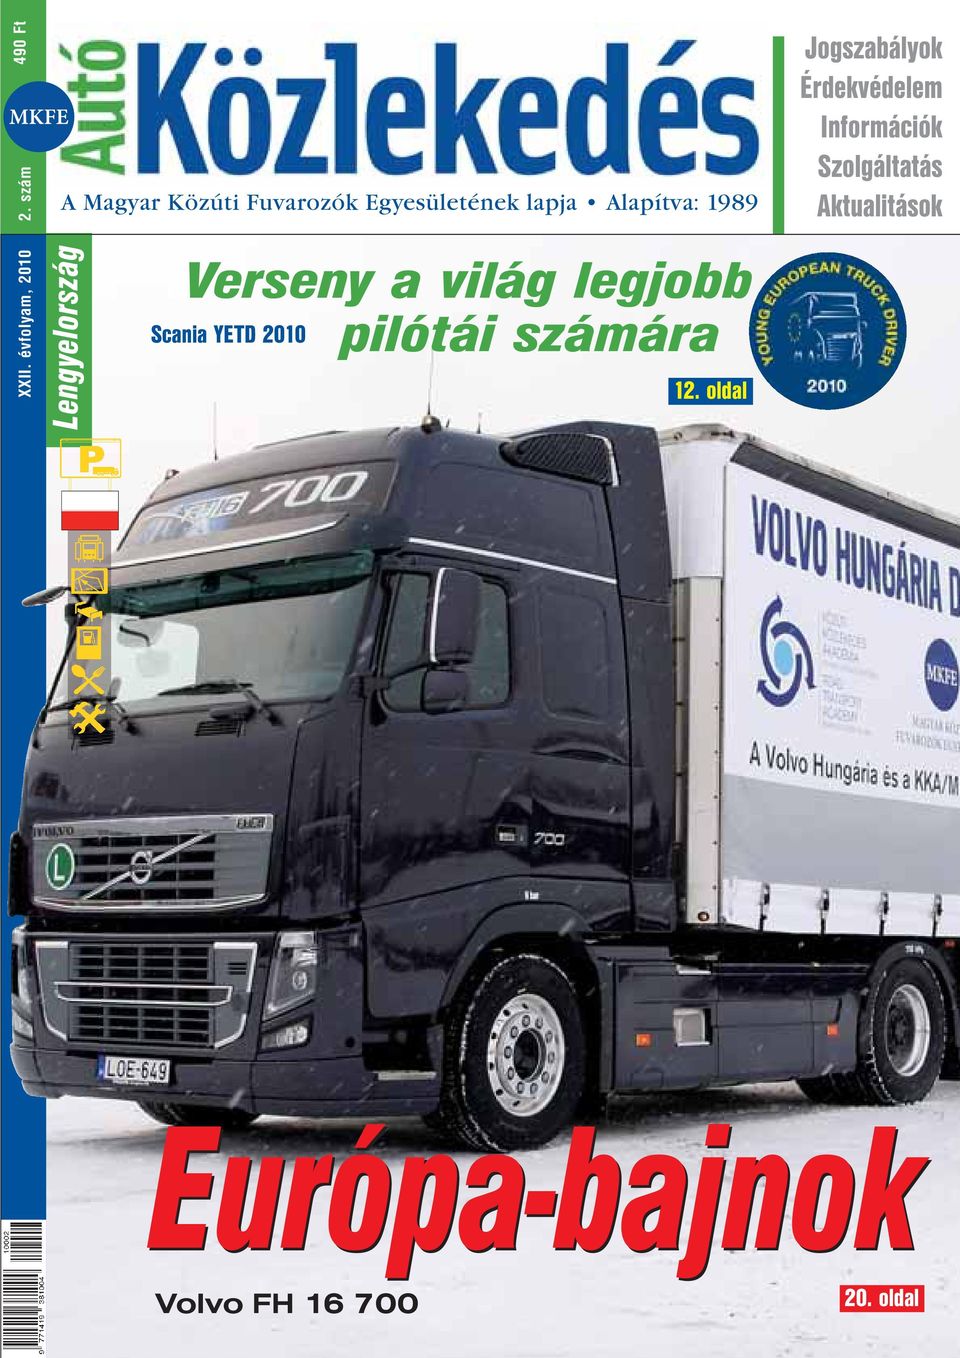 lapja Alapítva: 1989 Verseny a világ legjobb Scania YETD 2010 pilótái